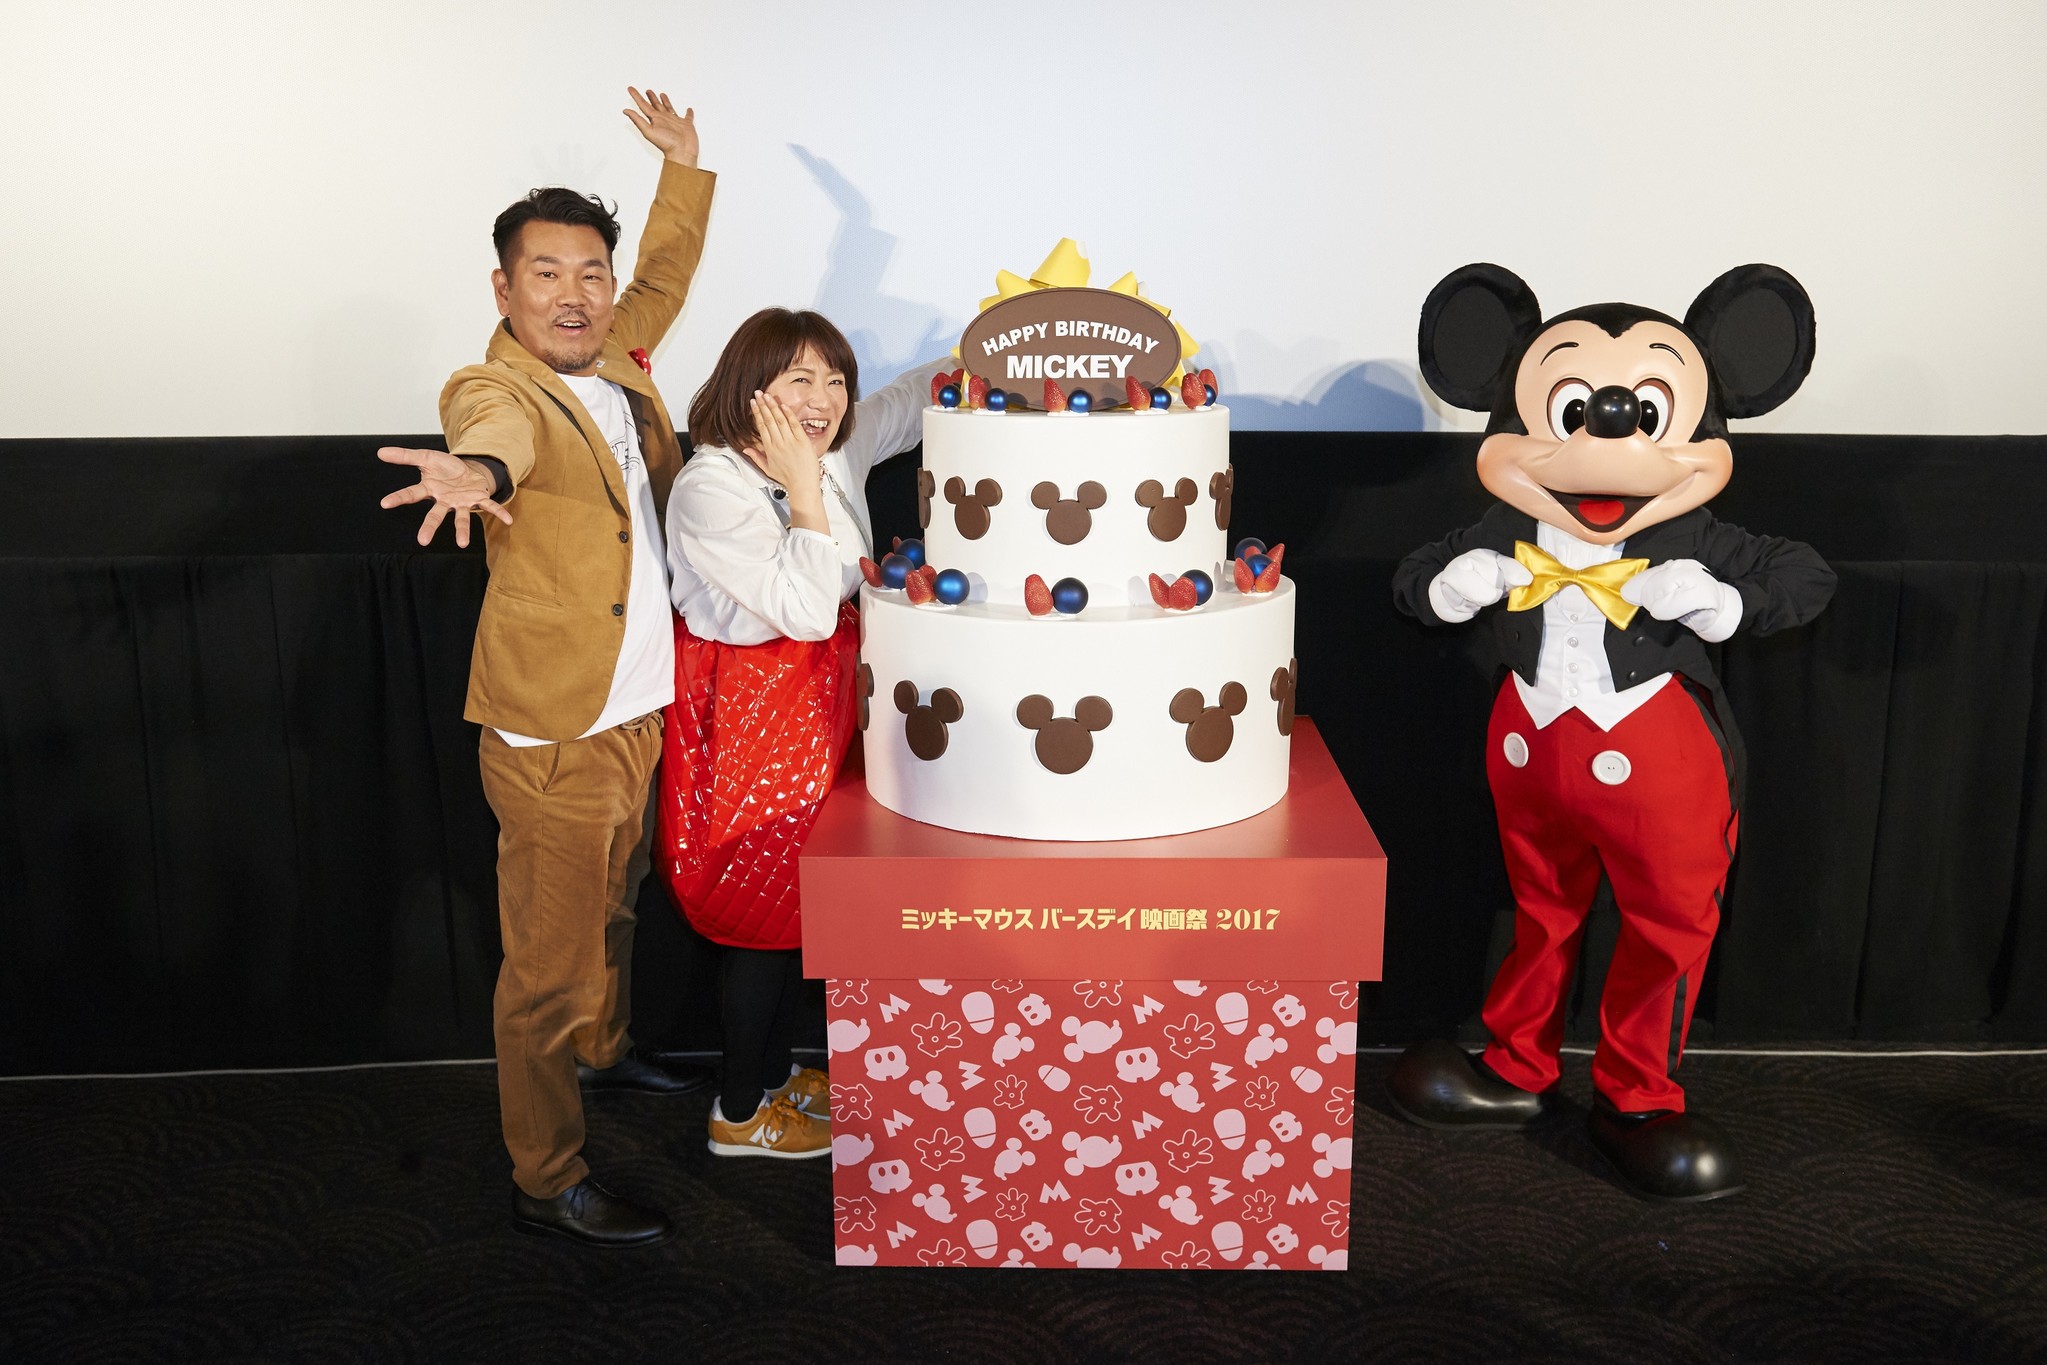 ミッキーマウスがサプライズ登場 Fujiwara 藤本さん 森三中 黒沢さんがミッキーファンの皆さんとミッキー のバースデーイベントを開催 ウォルト ディズニー ジャパン株式会社のプレスリリース